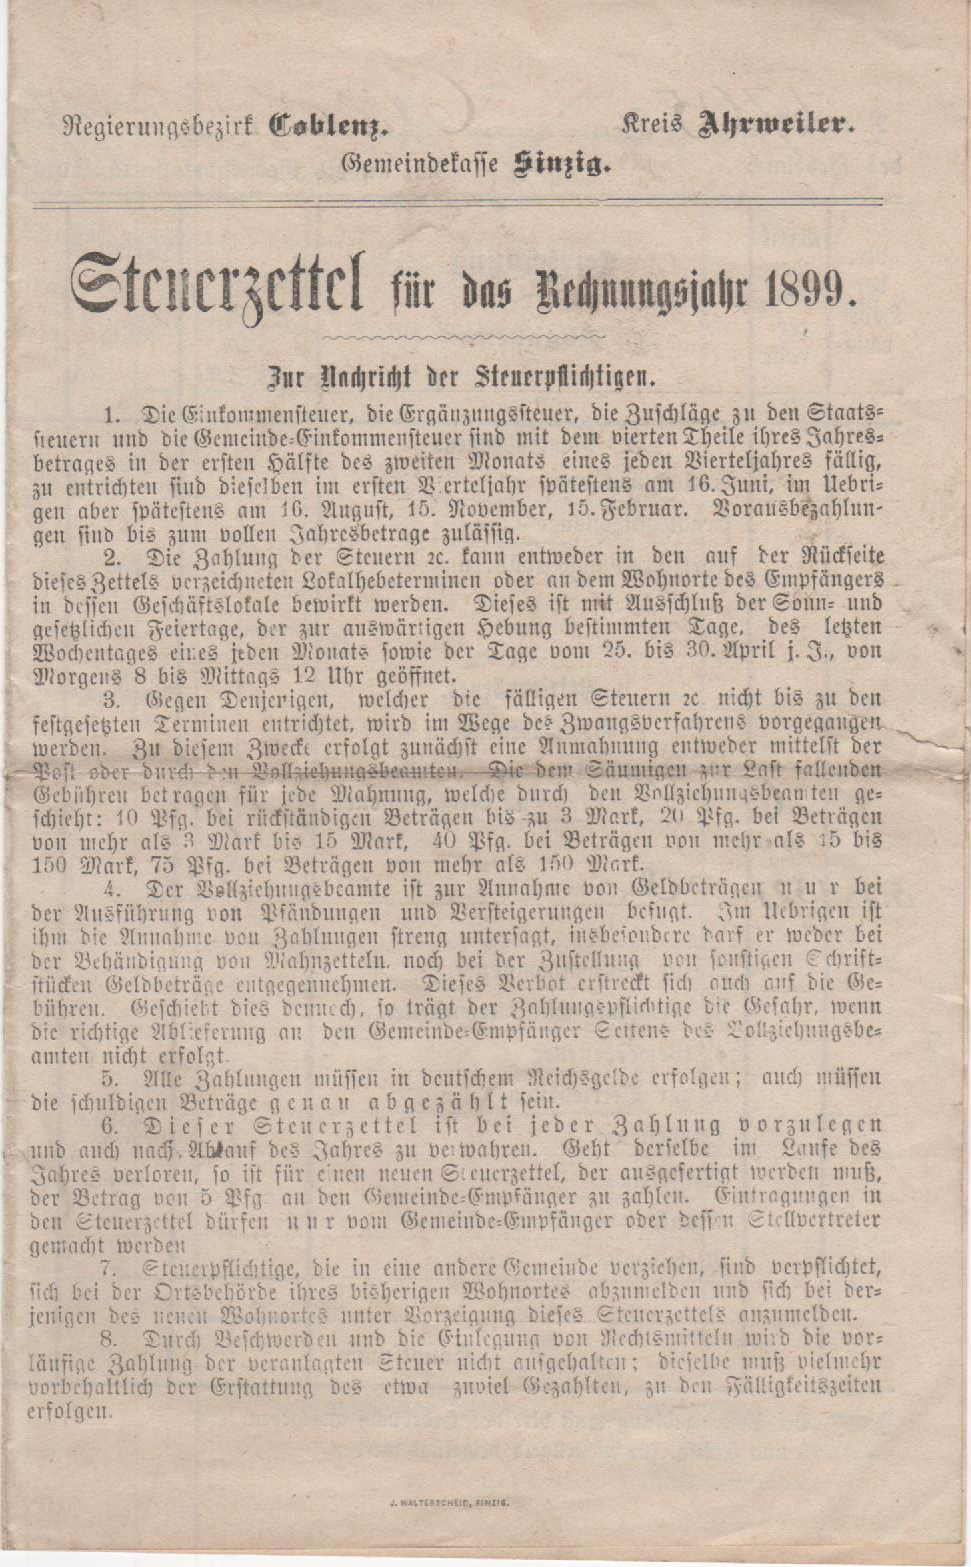 Steuerzettel für das Rechnungsjahr 1899 der Königlichen Steuer- und Gemeindekasse Ahrweiler (Heimatmuseum und -Archiv Bad Bodendorf CC BY-NC-SA)